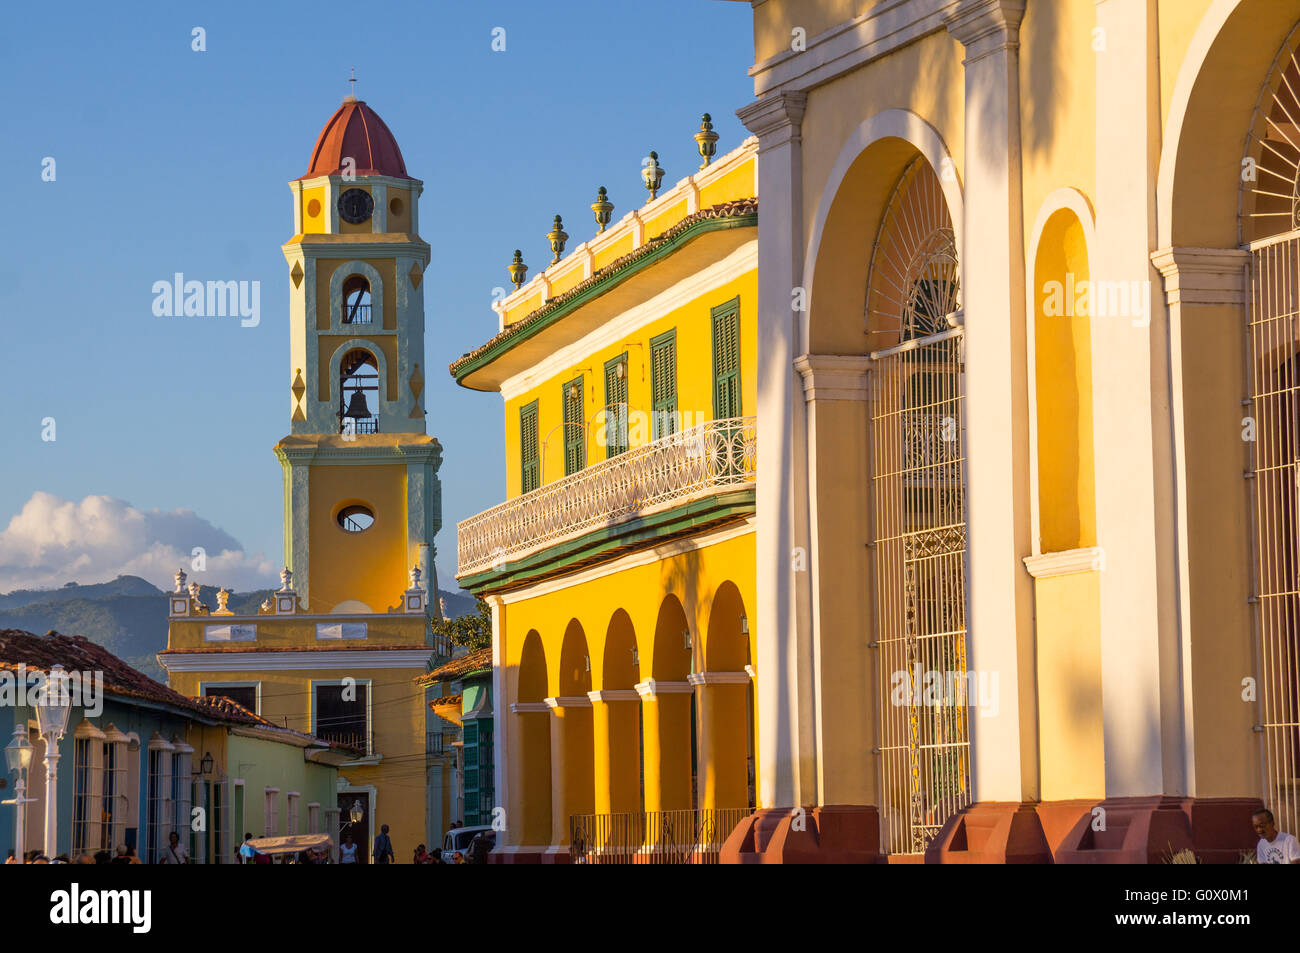 La splendida architettura coloniale dei Caraibi si riflette nella città cubane di Trinidad - Trinidad, Cuba nel dicembre 2015 Foto Stock